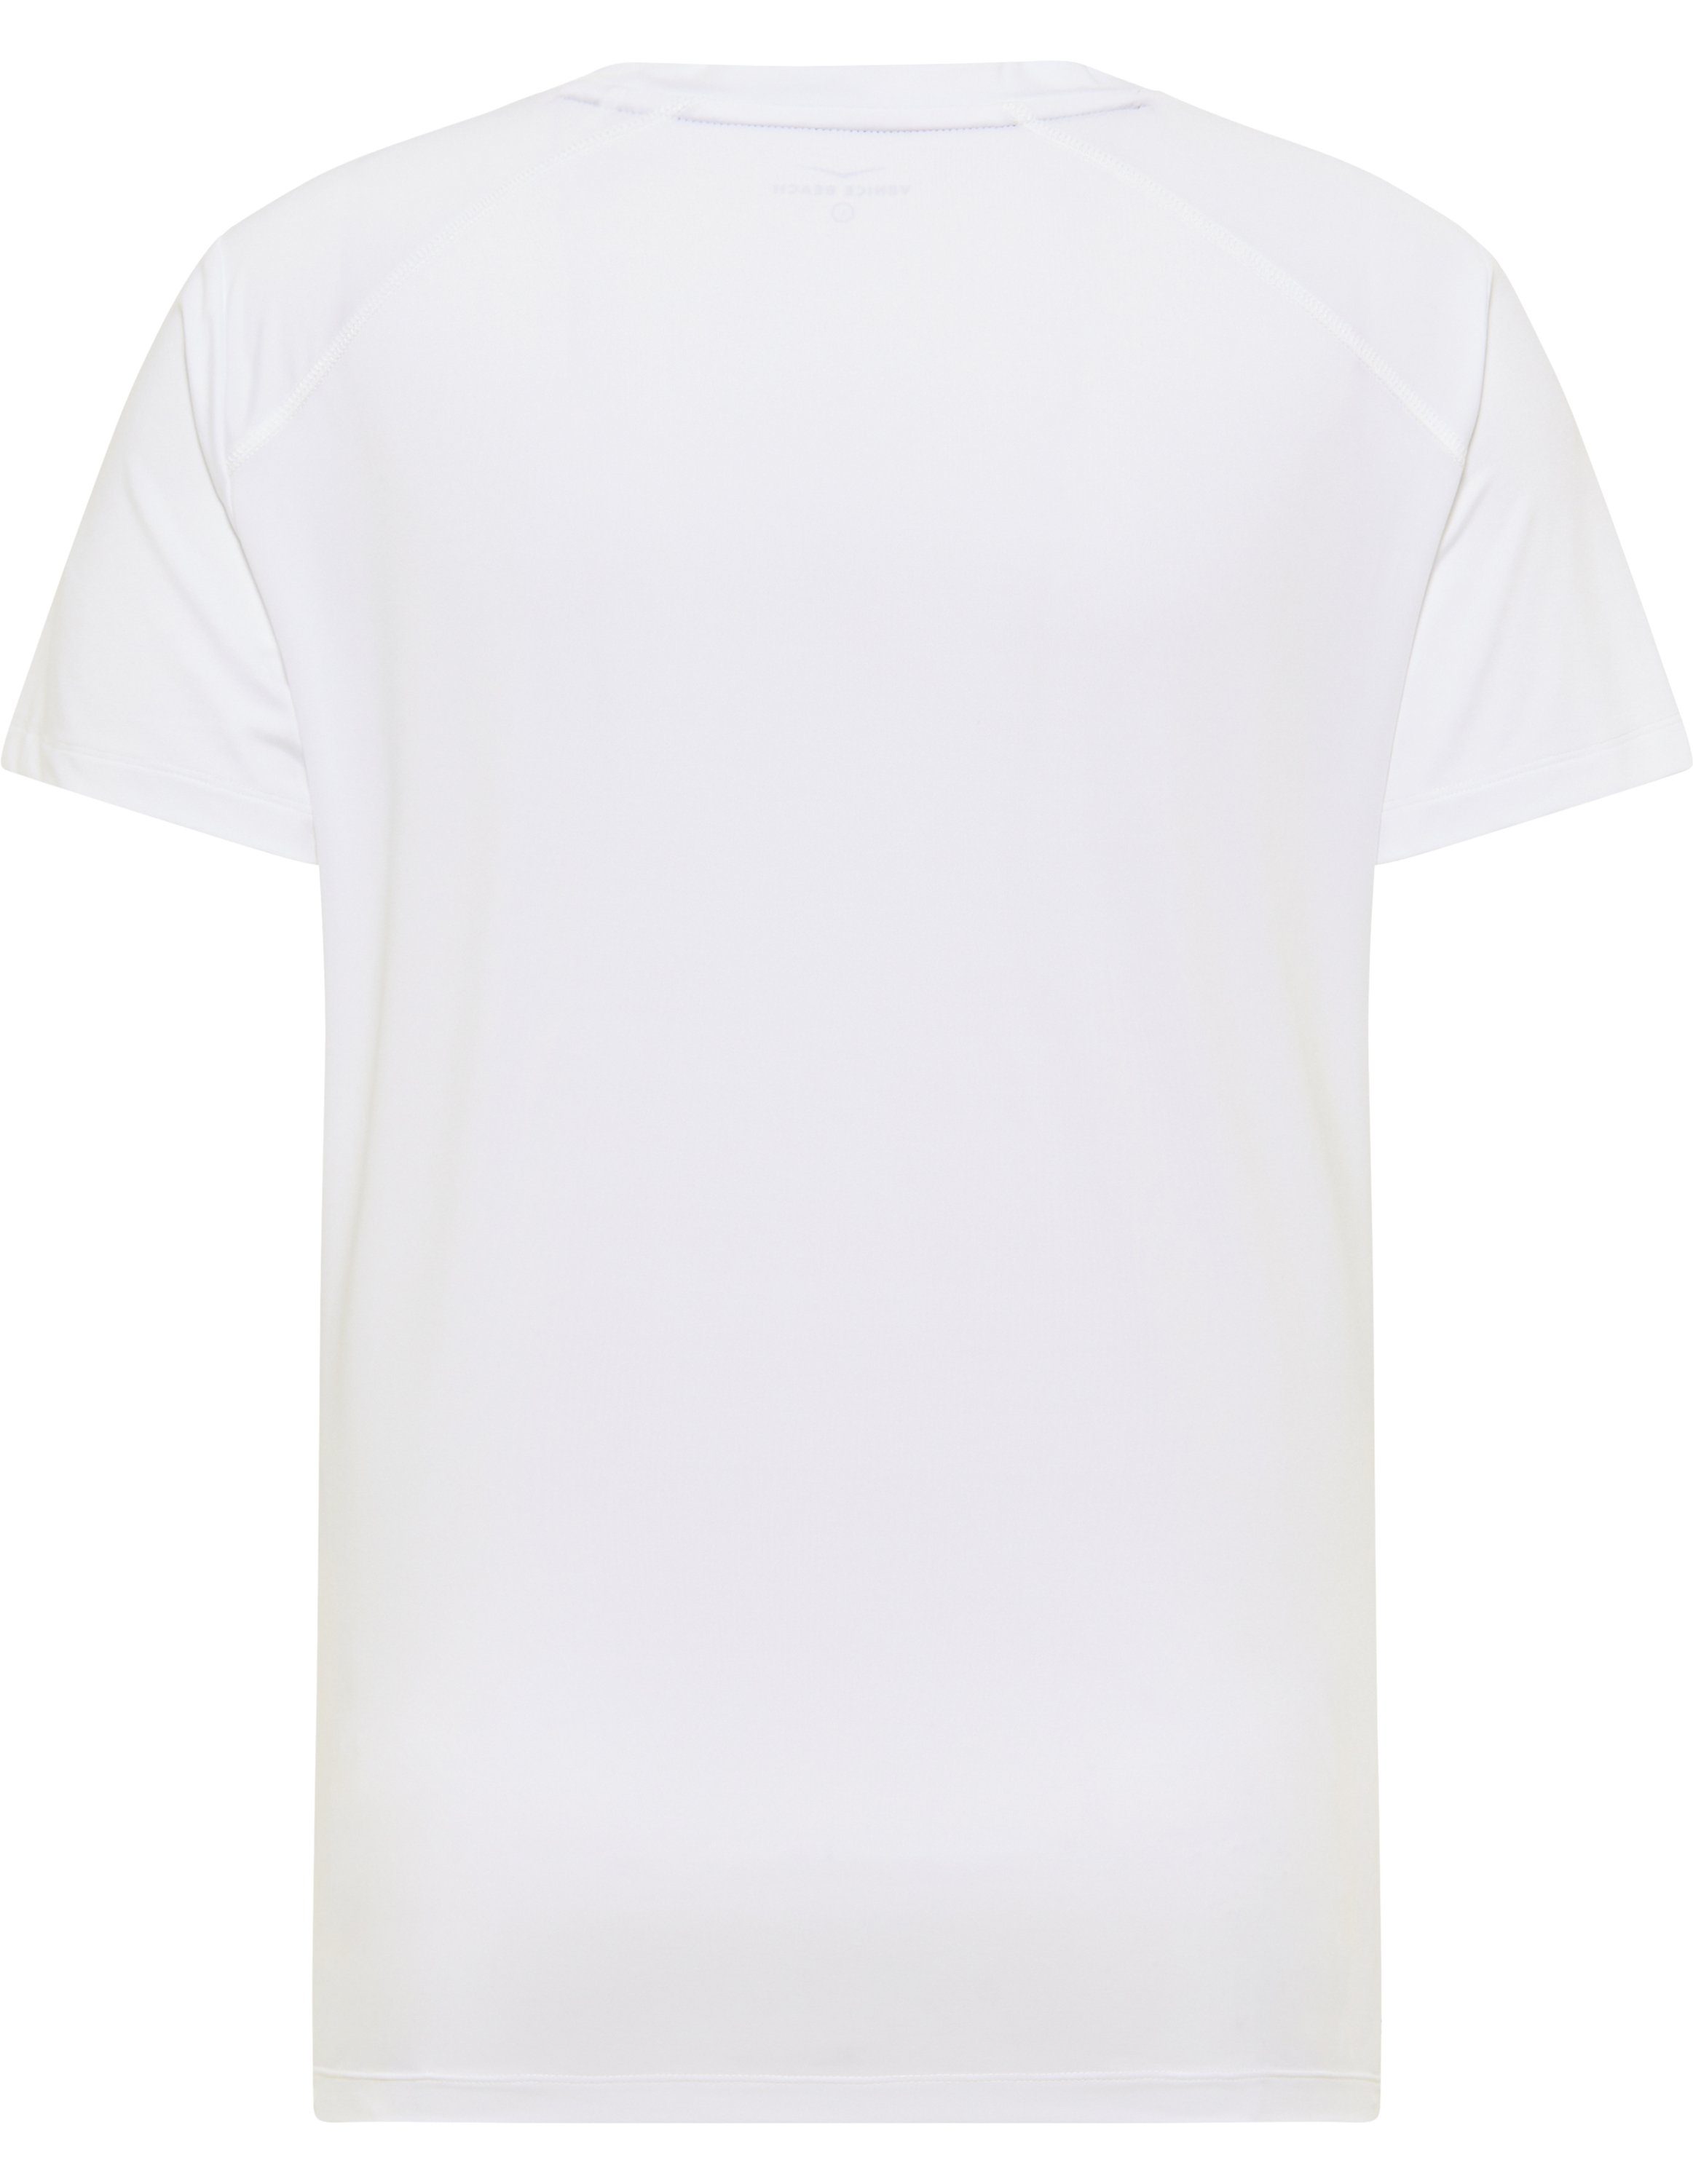 VB HAYES T-Shirt Beach Men Venice T-Shirt white